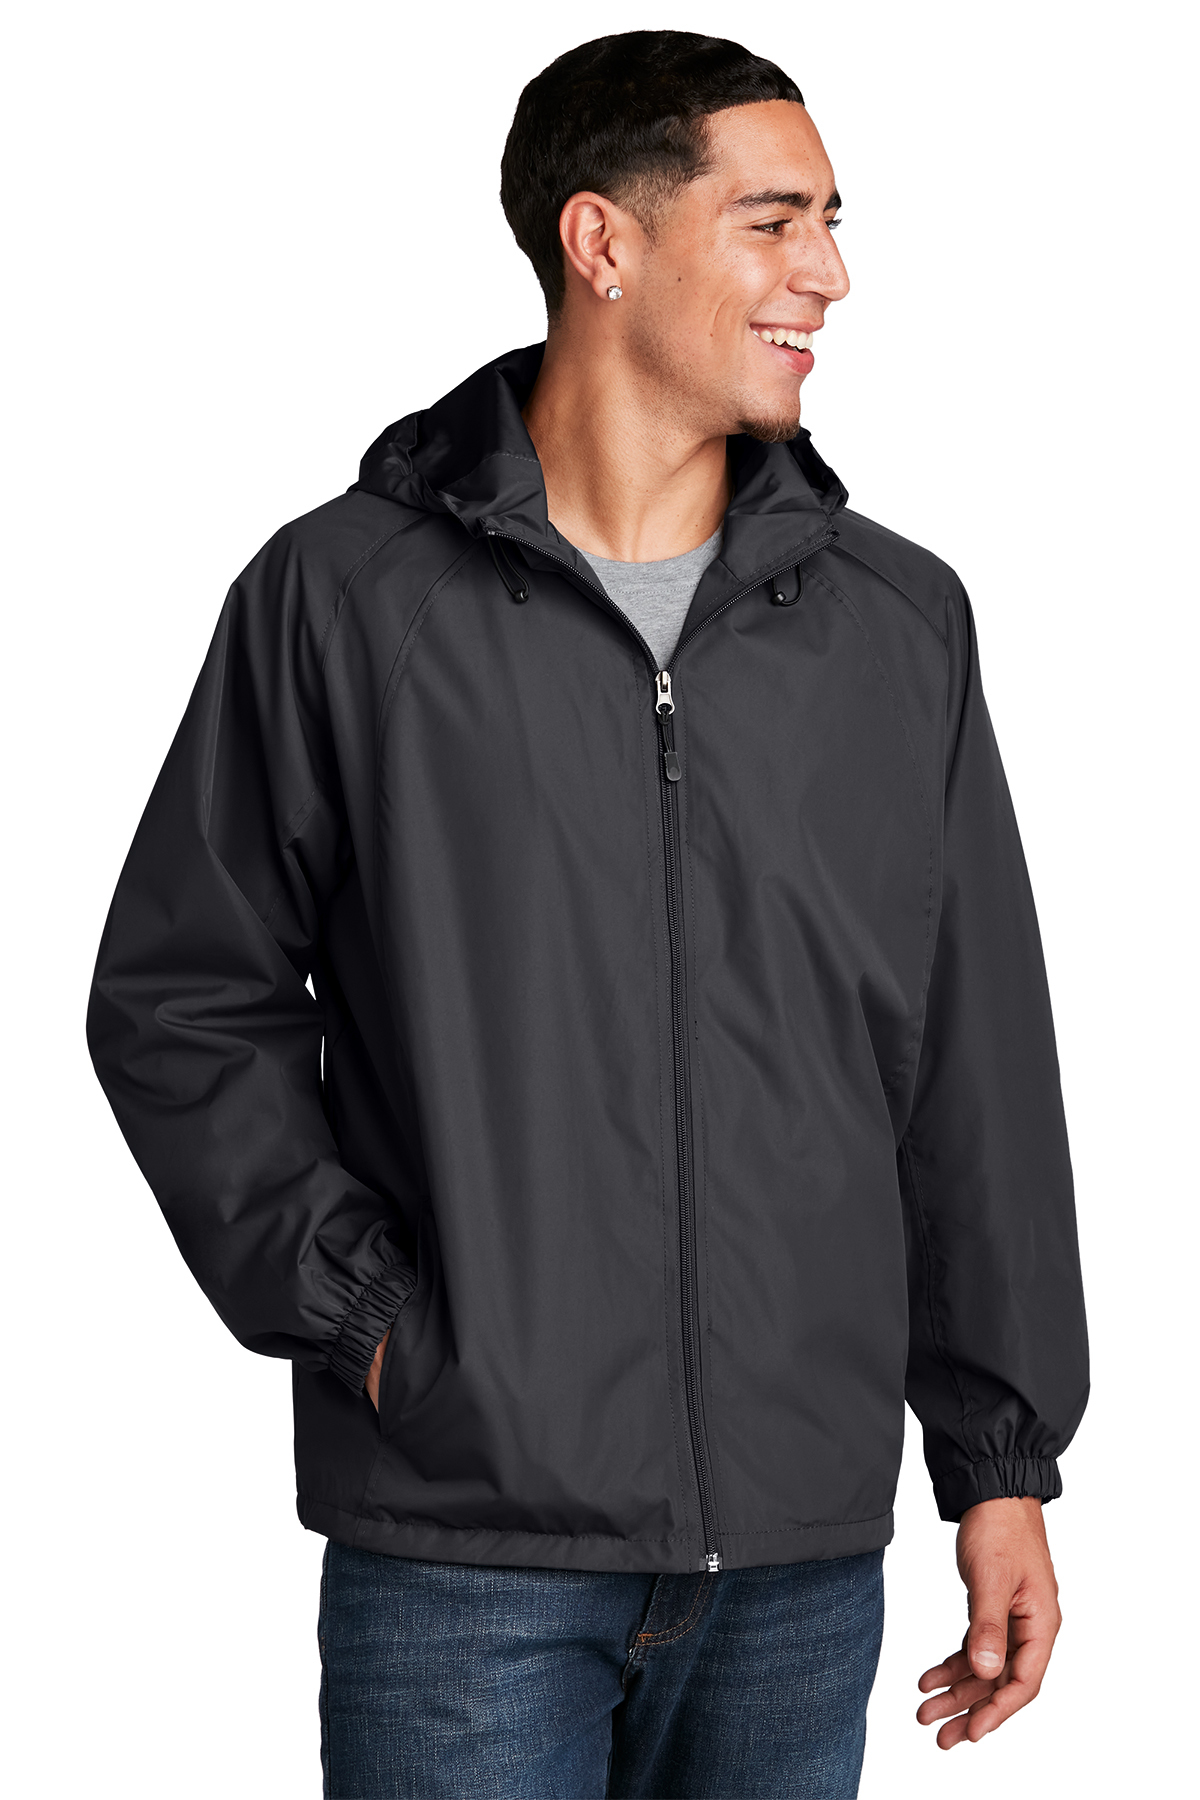 Sport-Tek Hooded Raglan Jacket | Product | SanMar